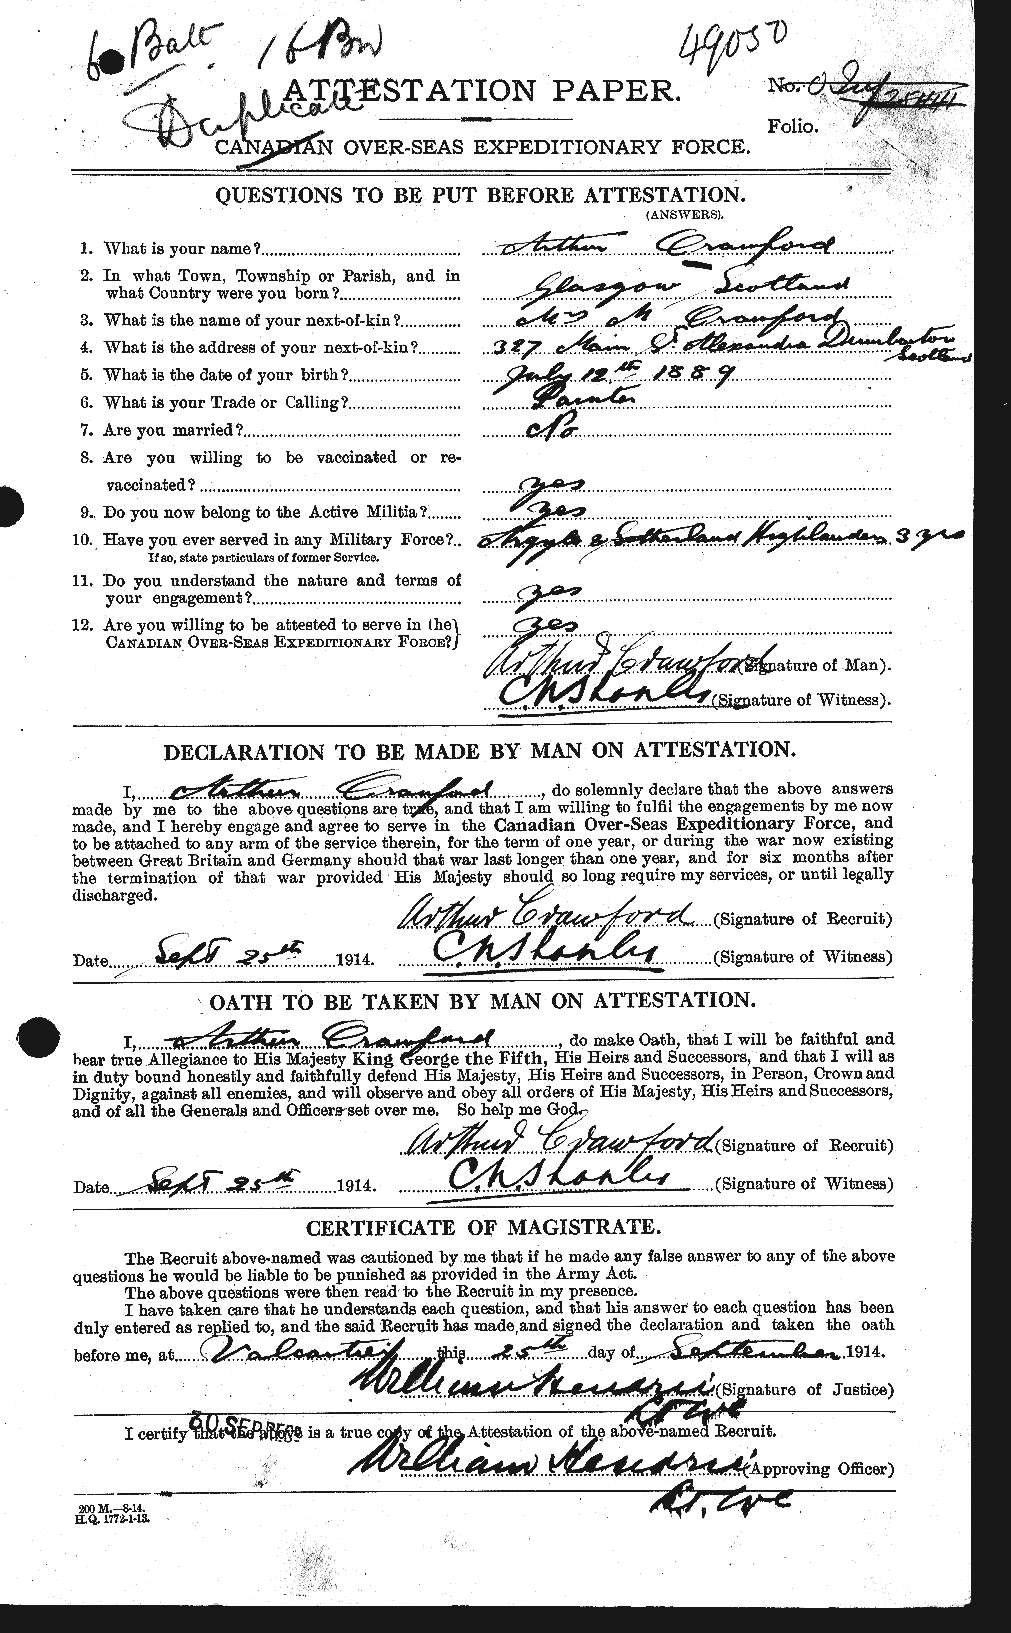 Dossiers du Personnel de la Première Guerre mondiale - CEC 060929a